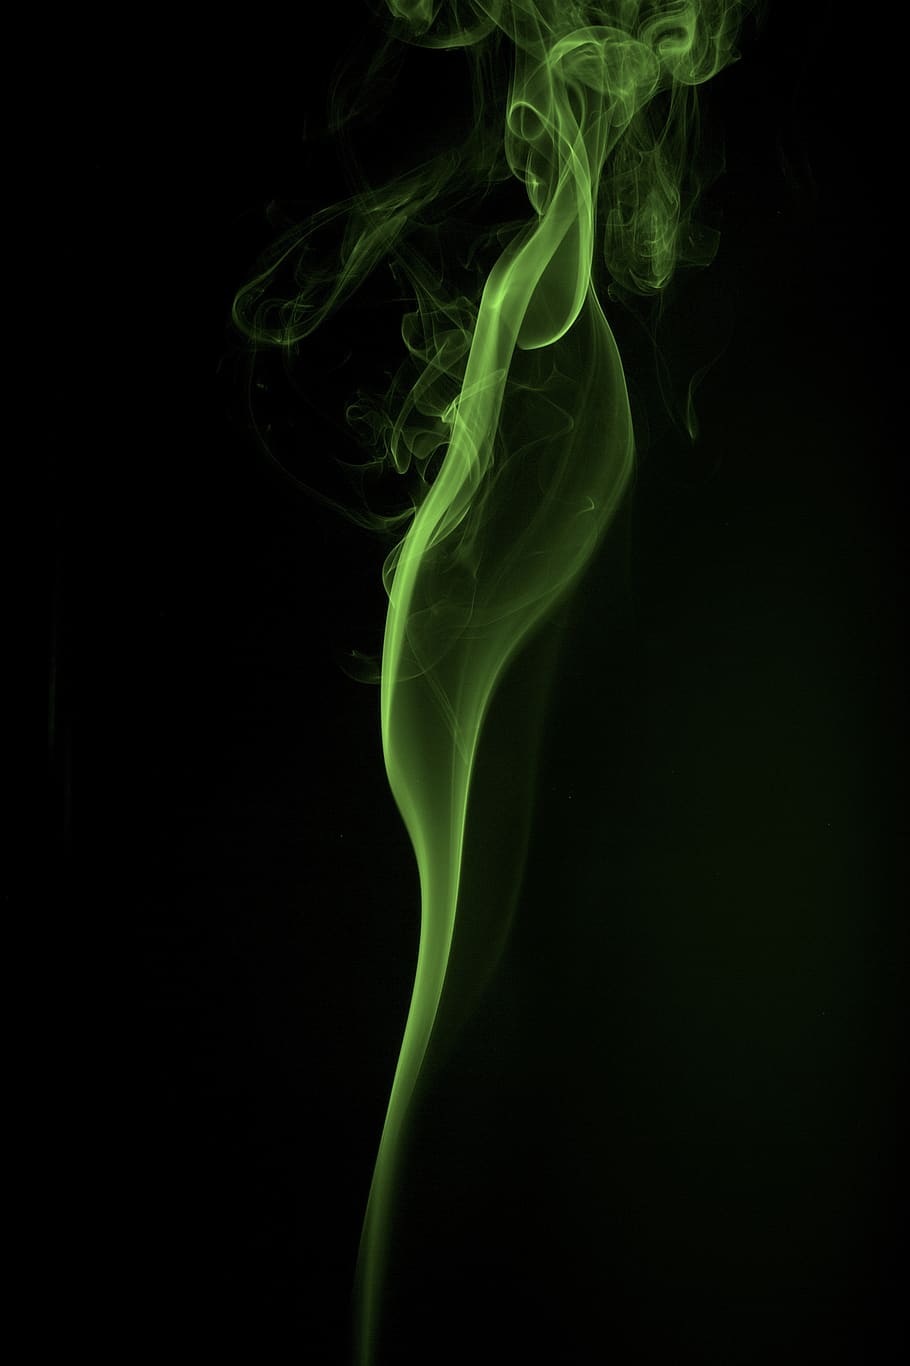 fumaça, arte, cigarro, fumaça - estrutura física, foto de estúdio, fundo preto, movimento, cor verde, sem pessoas, close-up